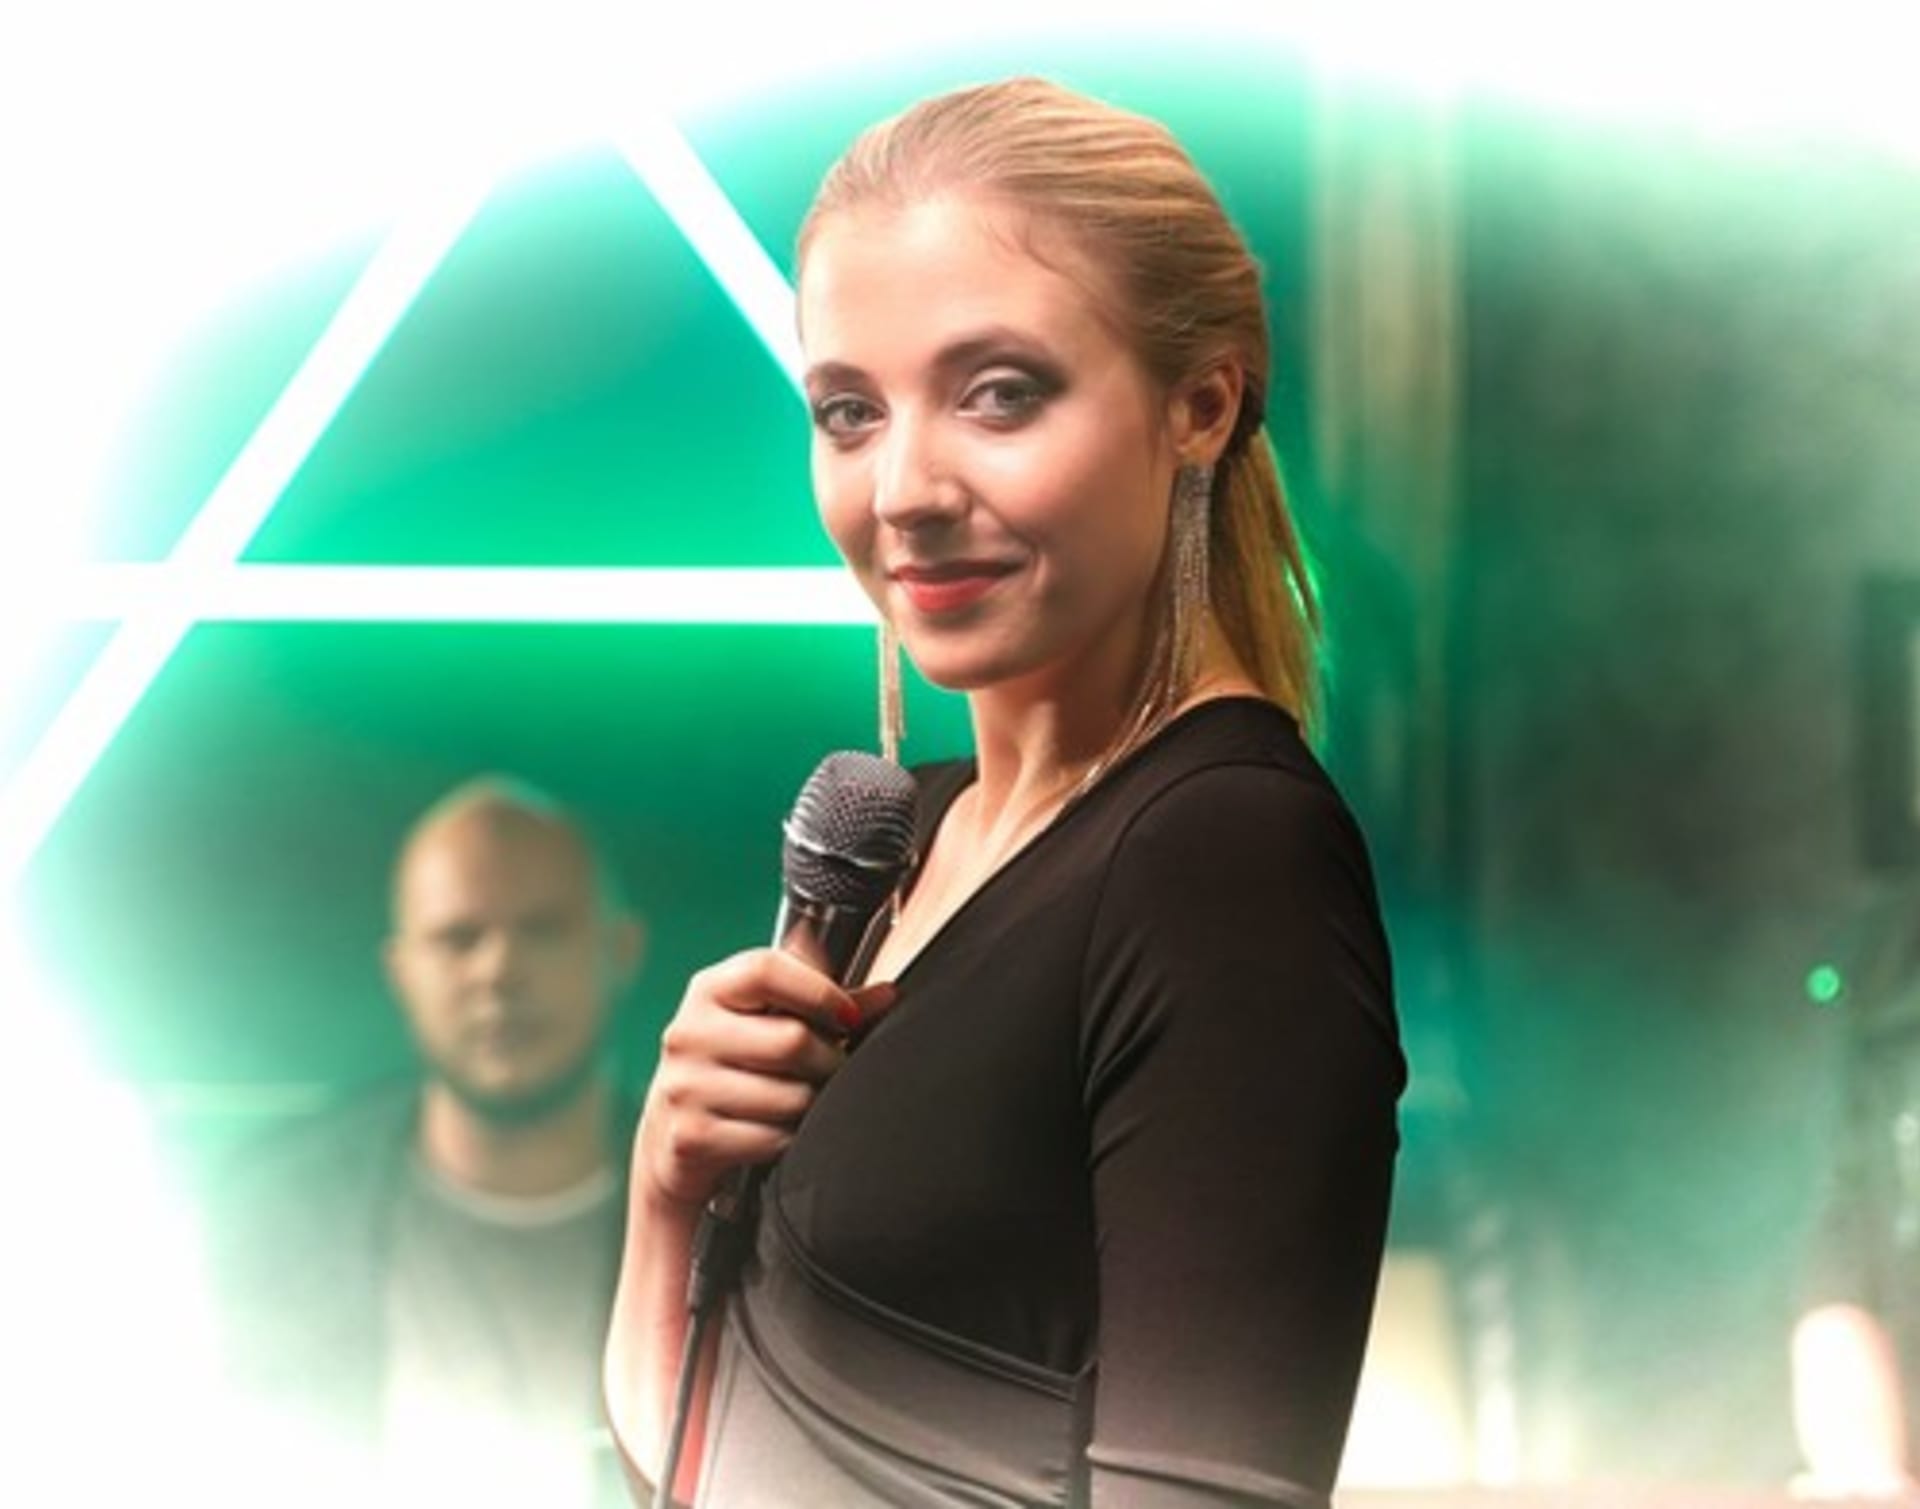 Dcera Dády Patrasové Anička Slováčková při natáčení videoklipu s názvem LEO v roce 2019